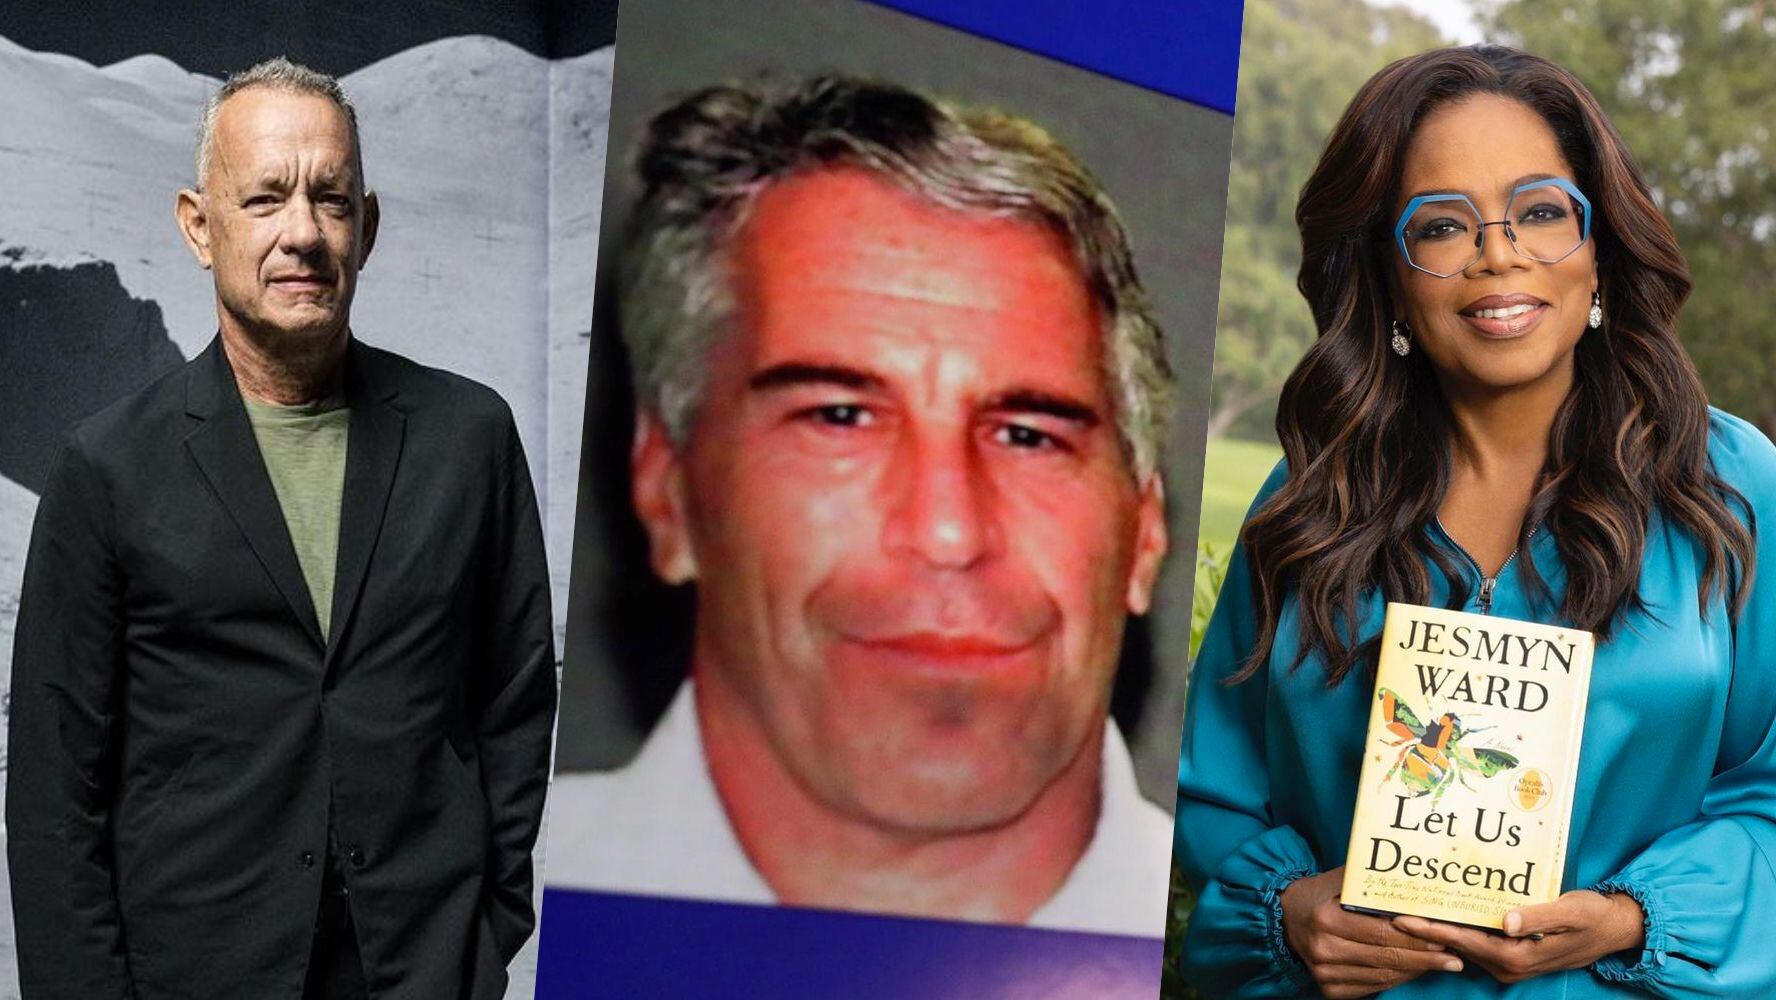 ¿Cómo reaccionaron Tom Hanks y Oprah Winfrey tras ser señalados en supuesta ‘lista’ de Epstein?